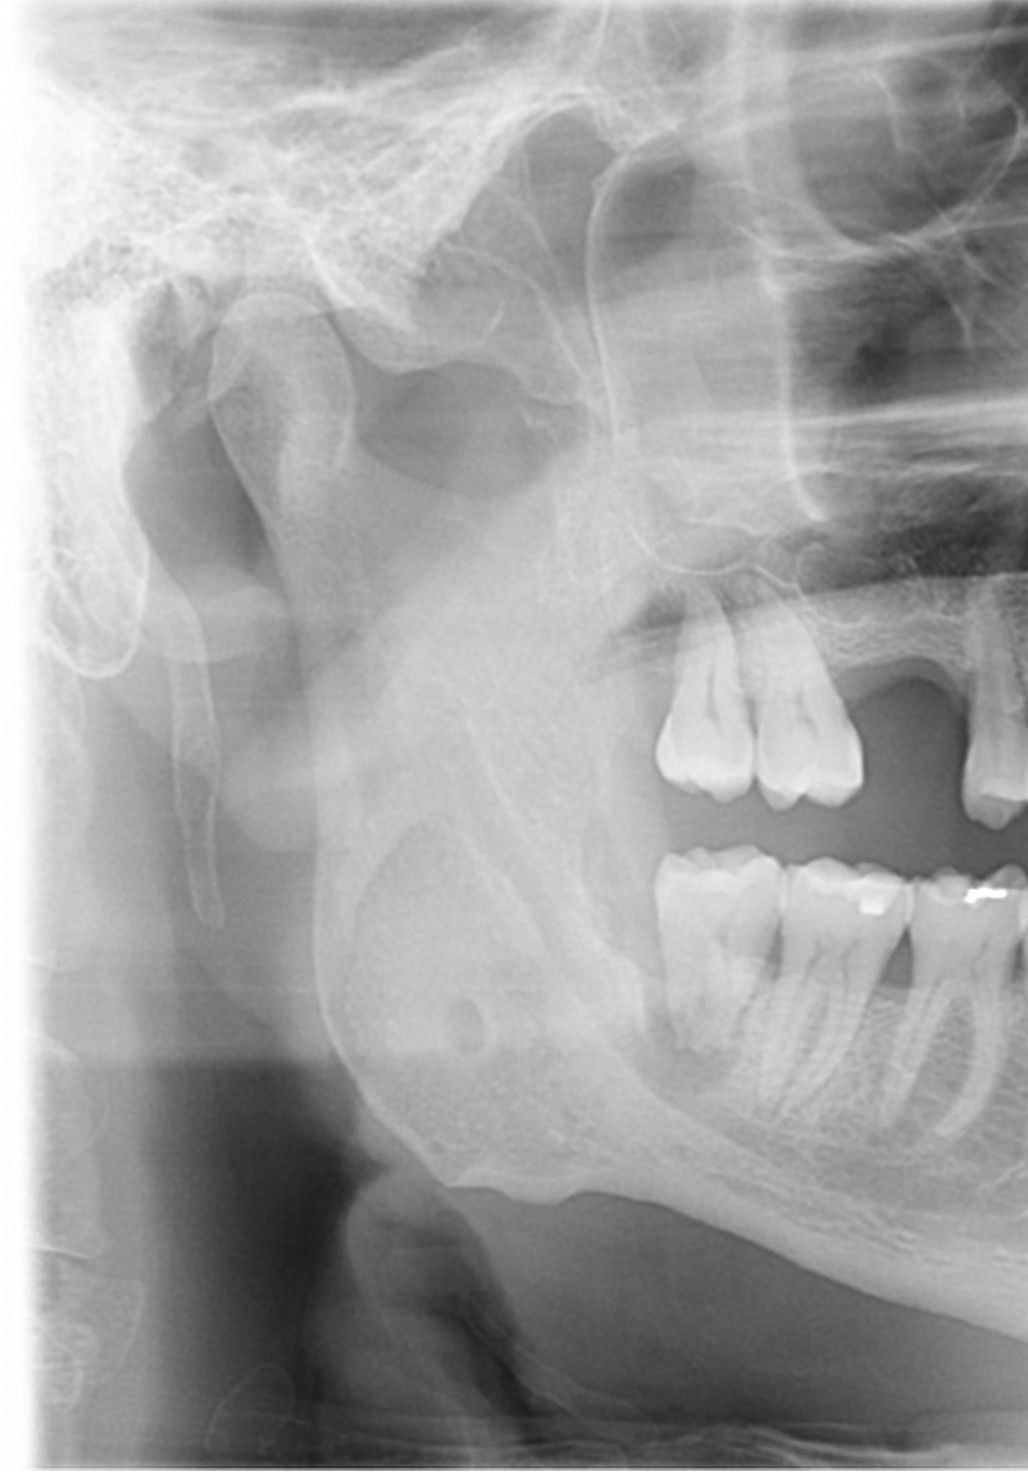 Rarefazione ossea in prossimità del molare 48.